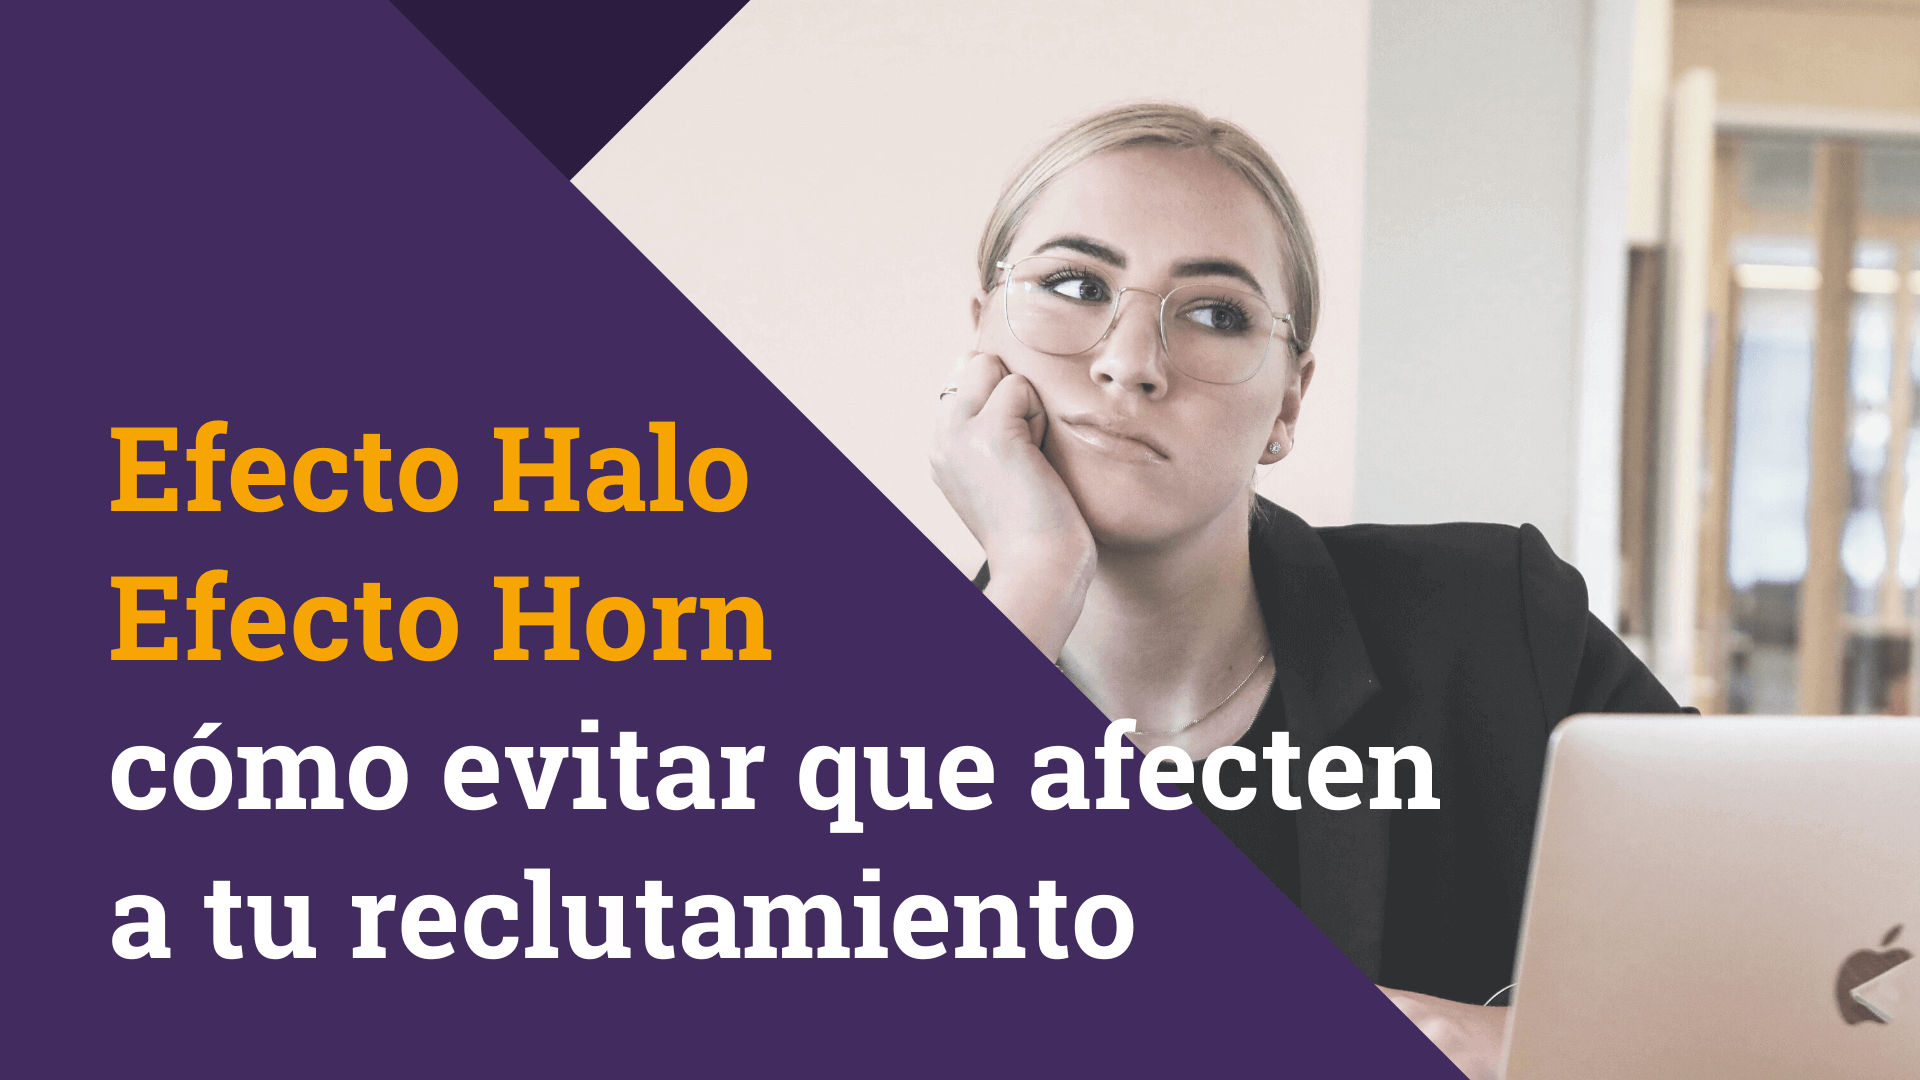 Efecto Halo y Efecto Horn en Recursos Humanos